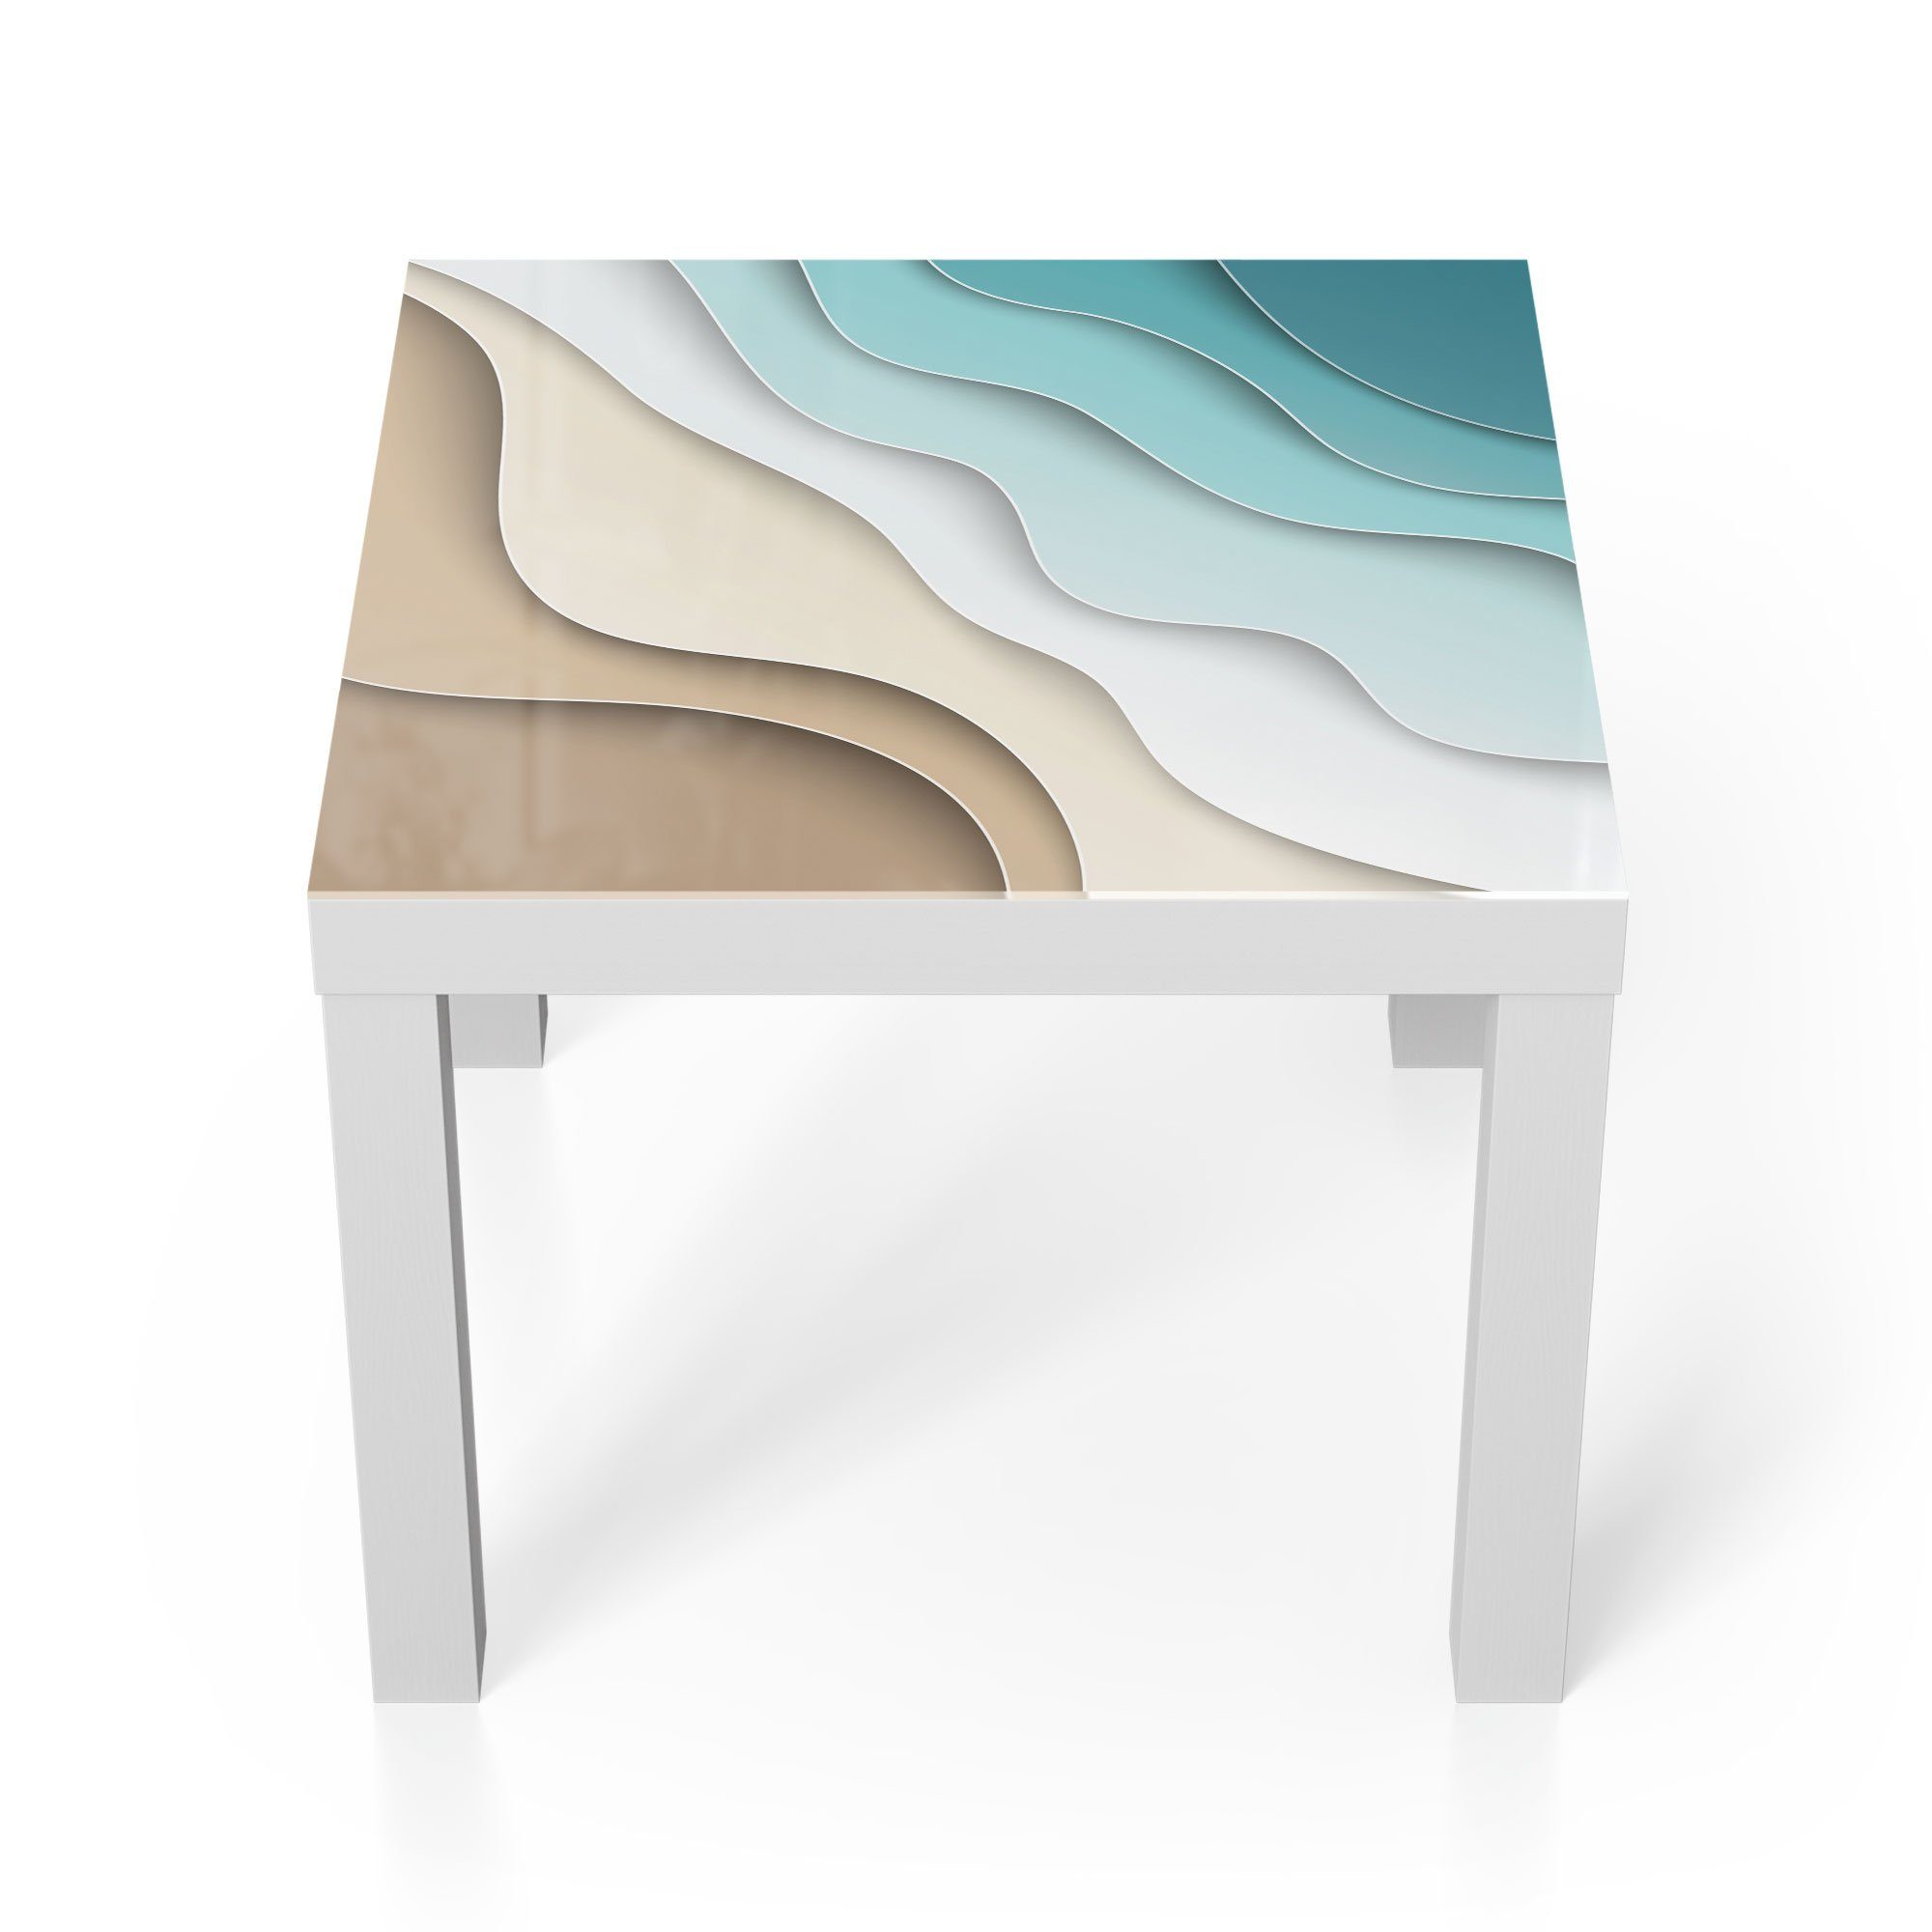 DEQORI Couchtisch 'Farbige Papierwellen', Glas Beistelltisch Glastisch modern Weiß | Couchtische